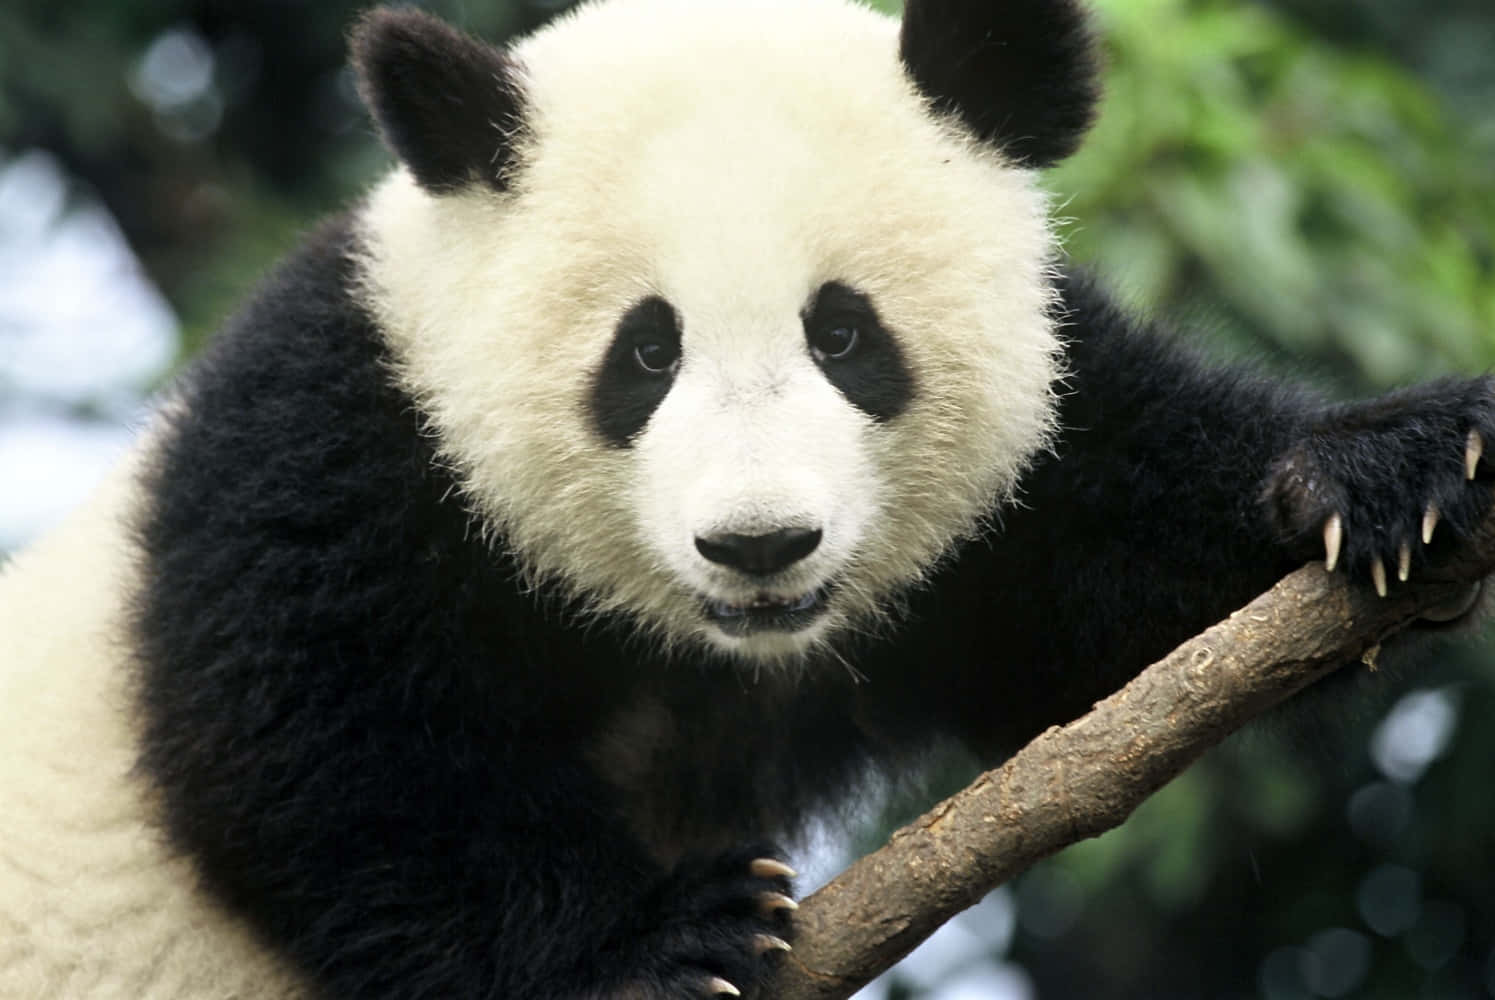 A Happy, Cute Panda